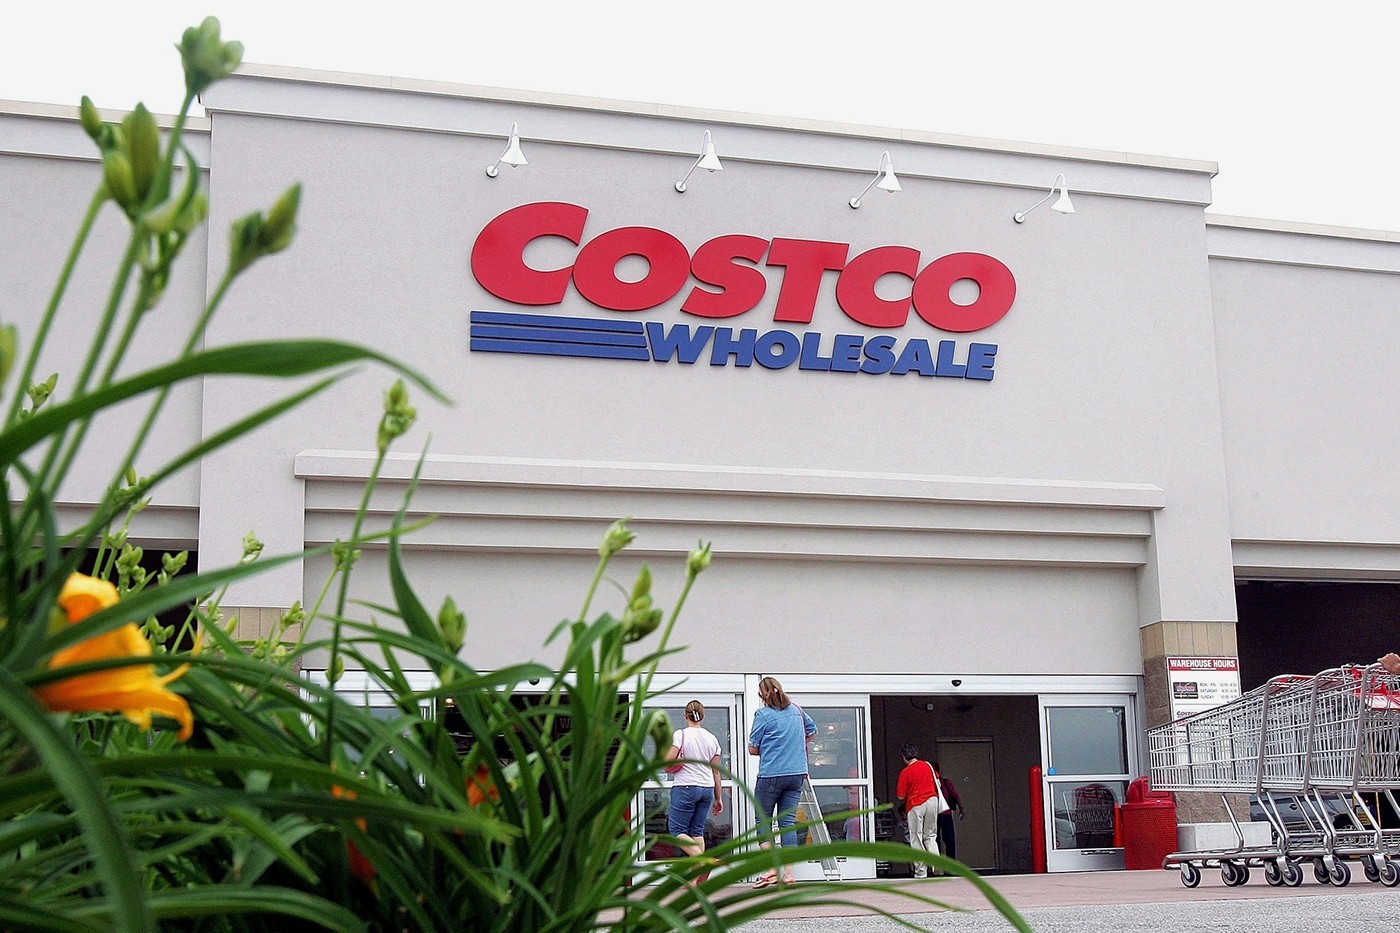 Costco 解释 Hot Dog、苏打汽水合售 $1.5 美元策略由来